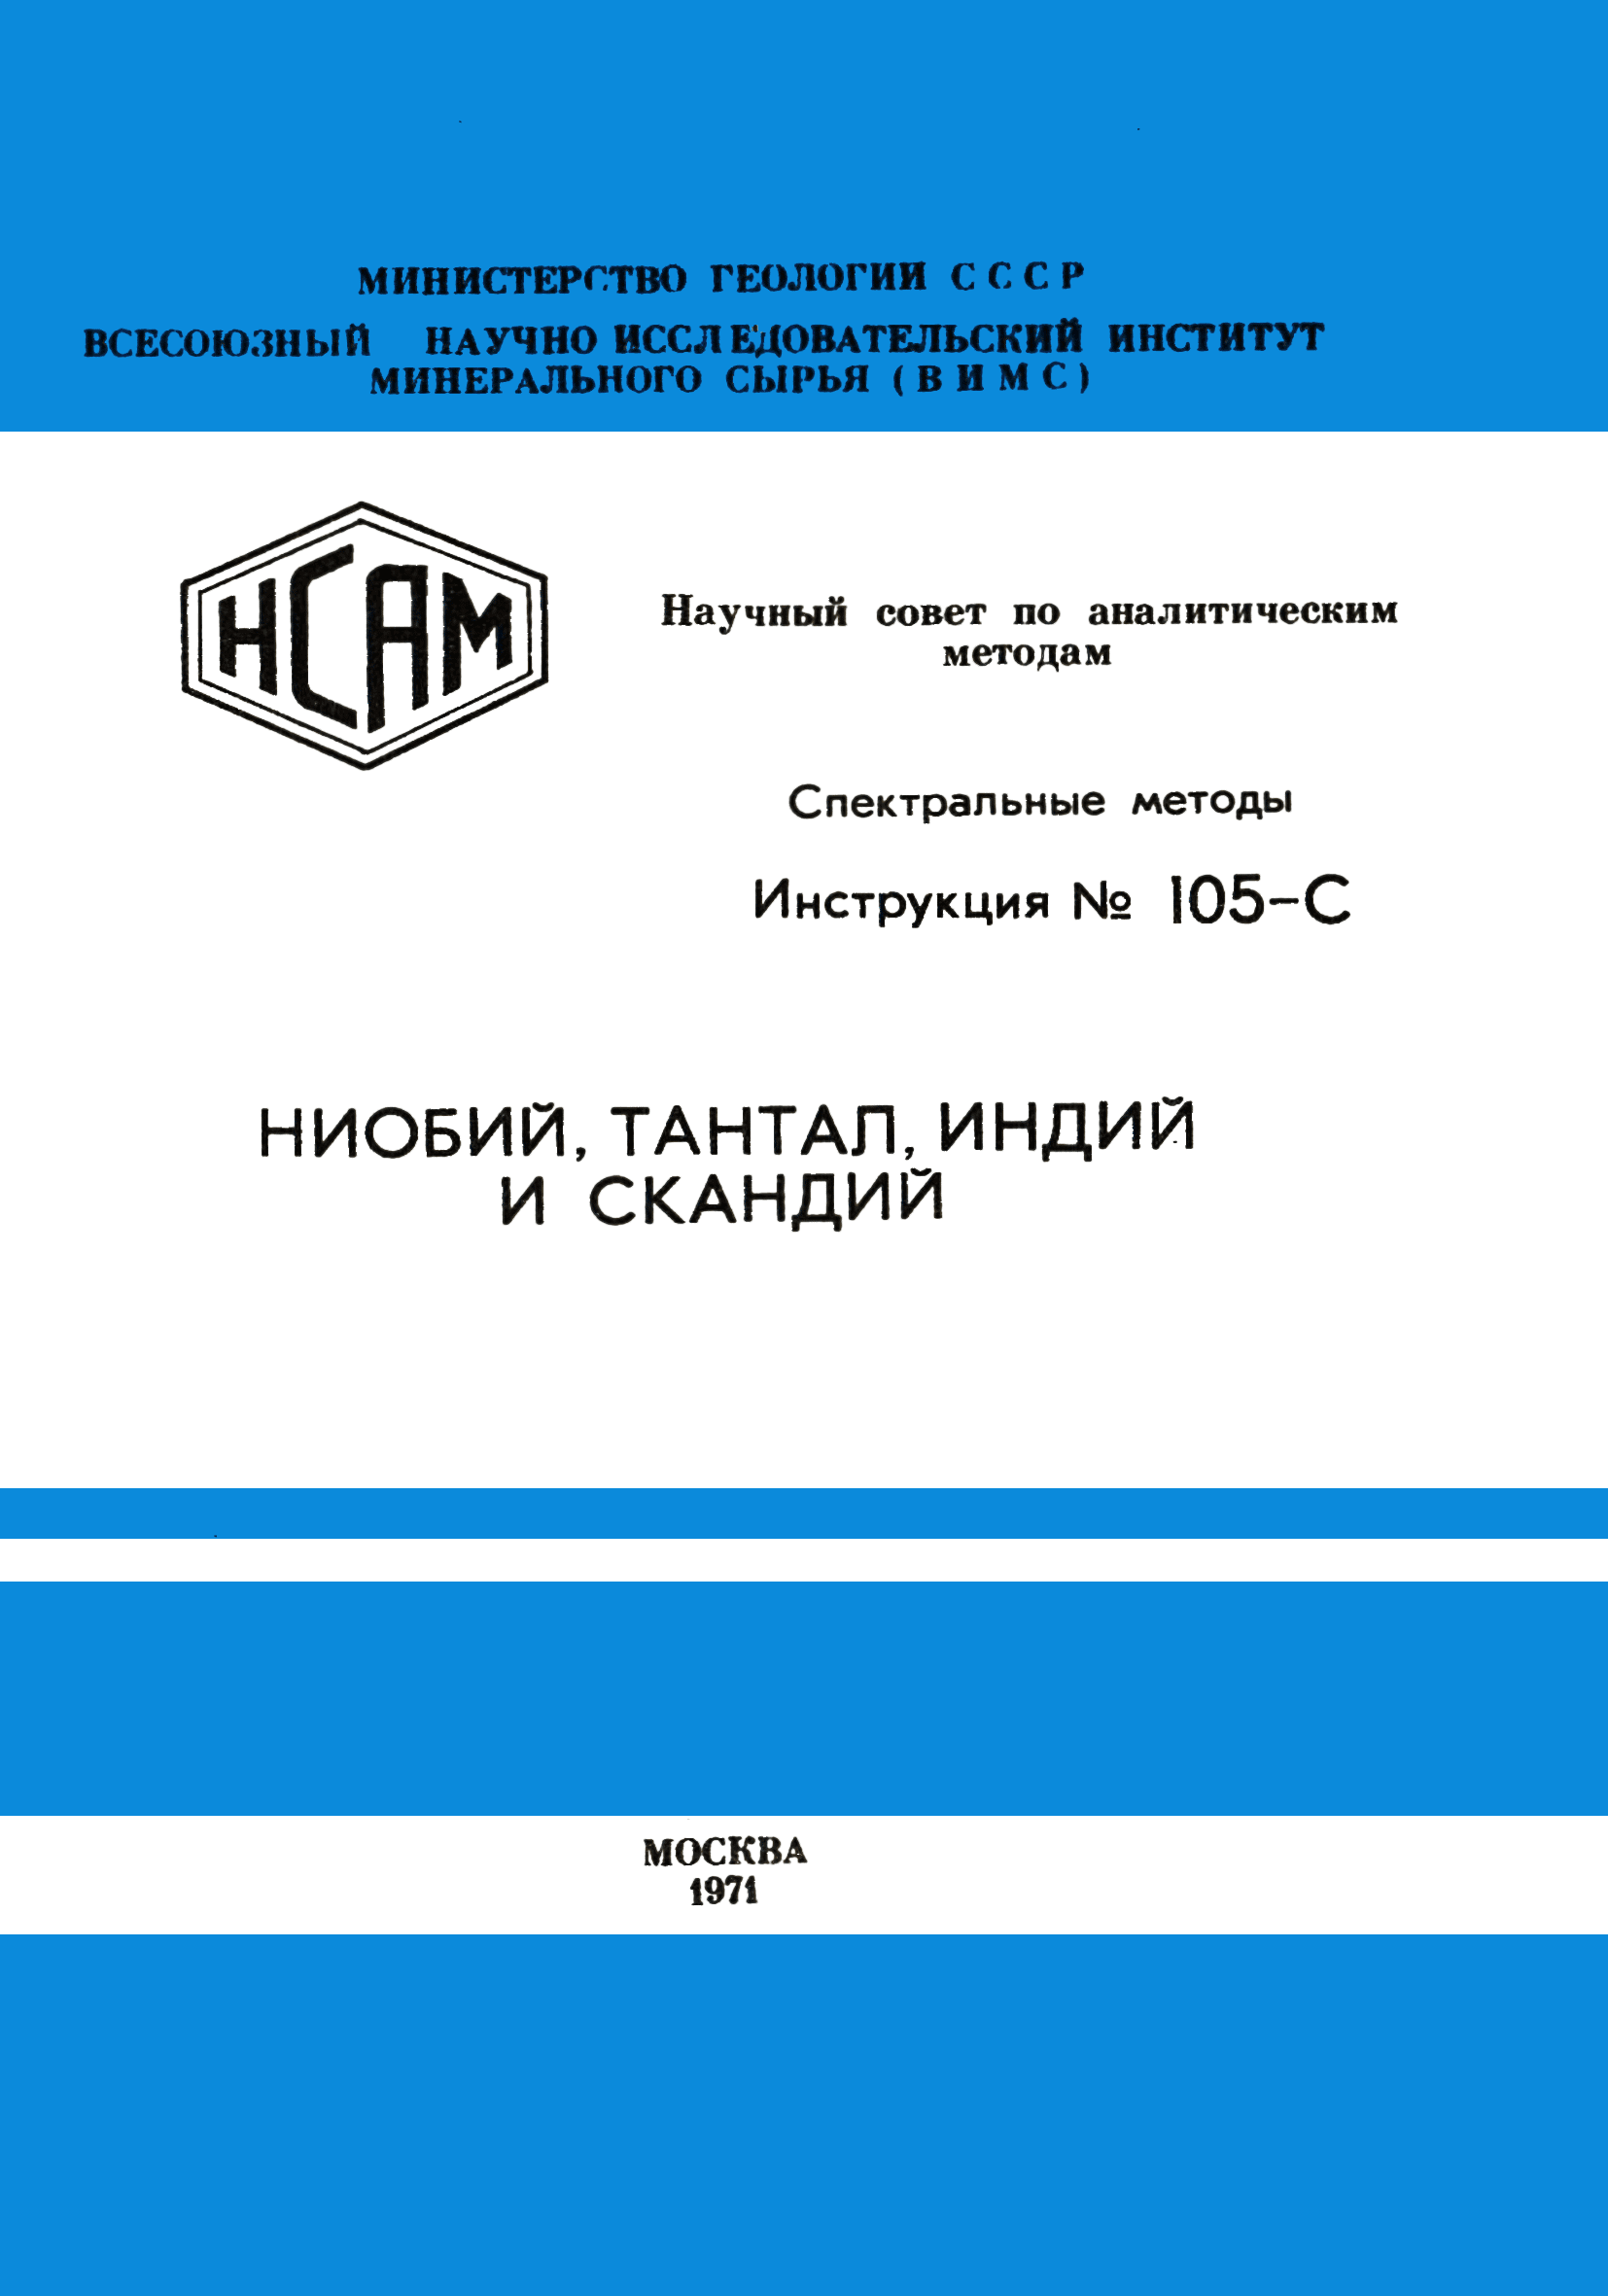 Инструкция НСАМ 105-С